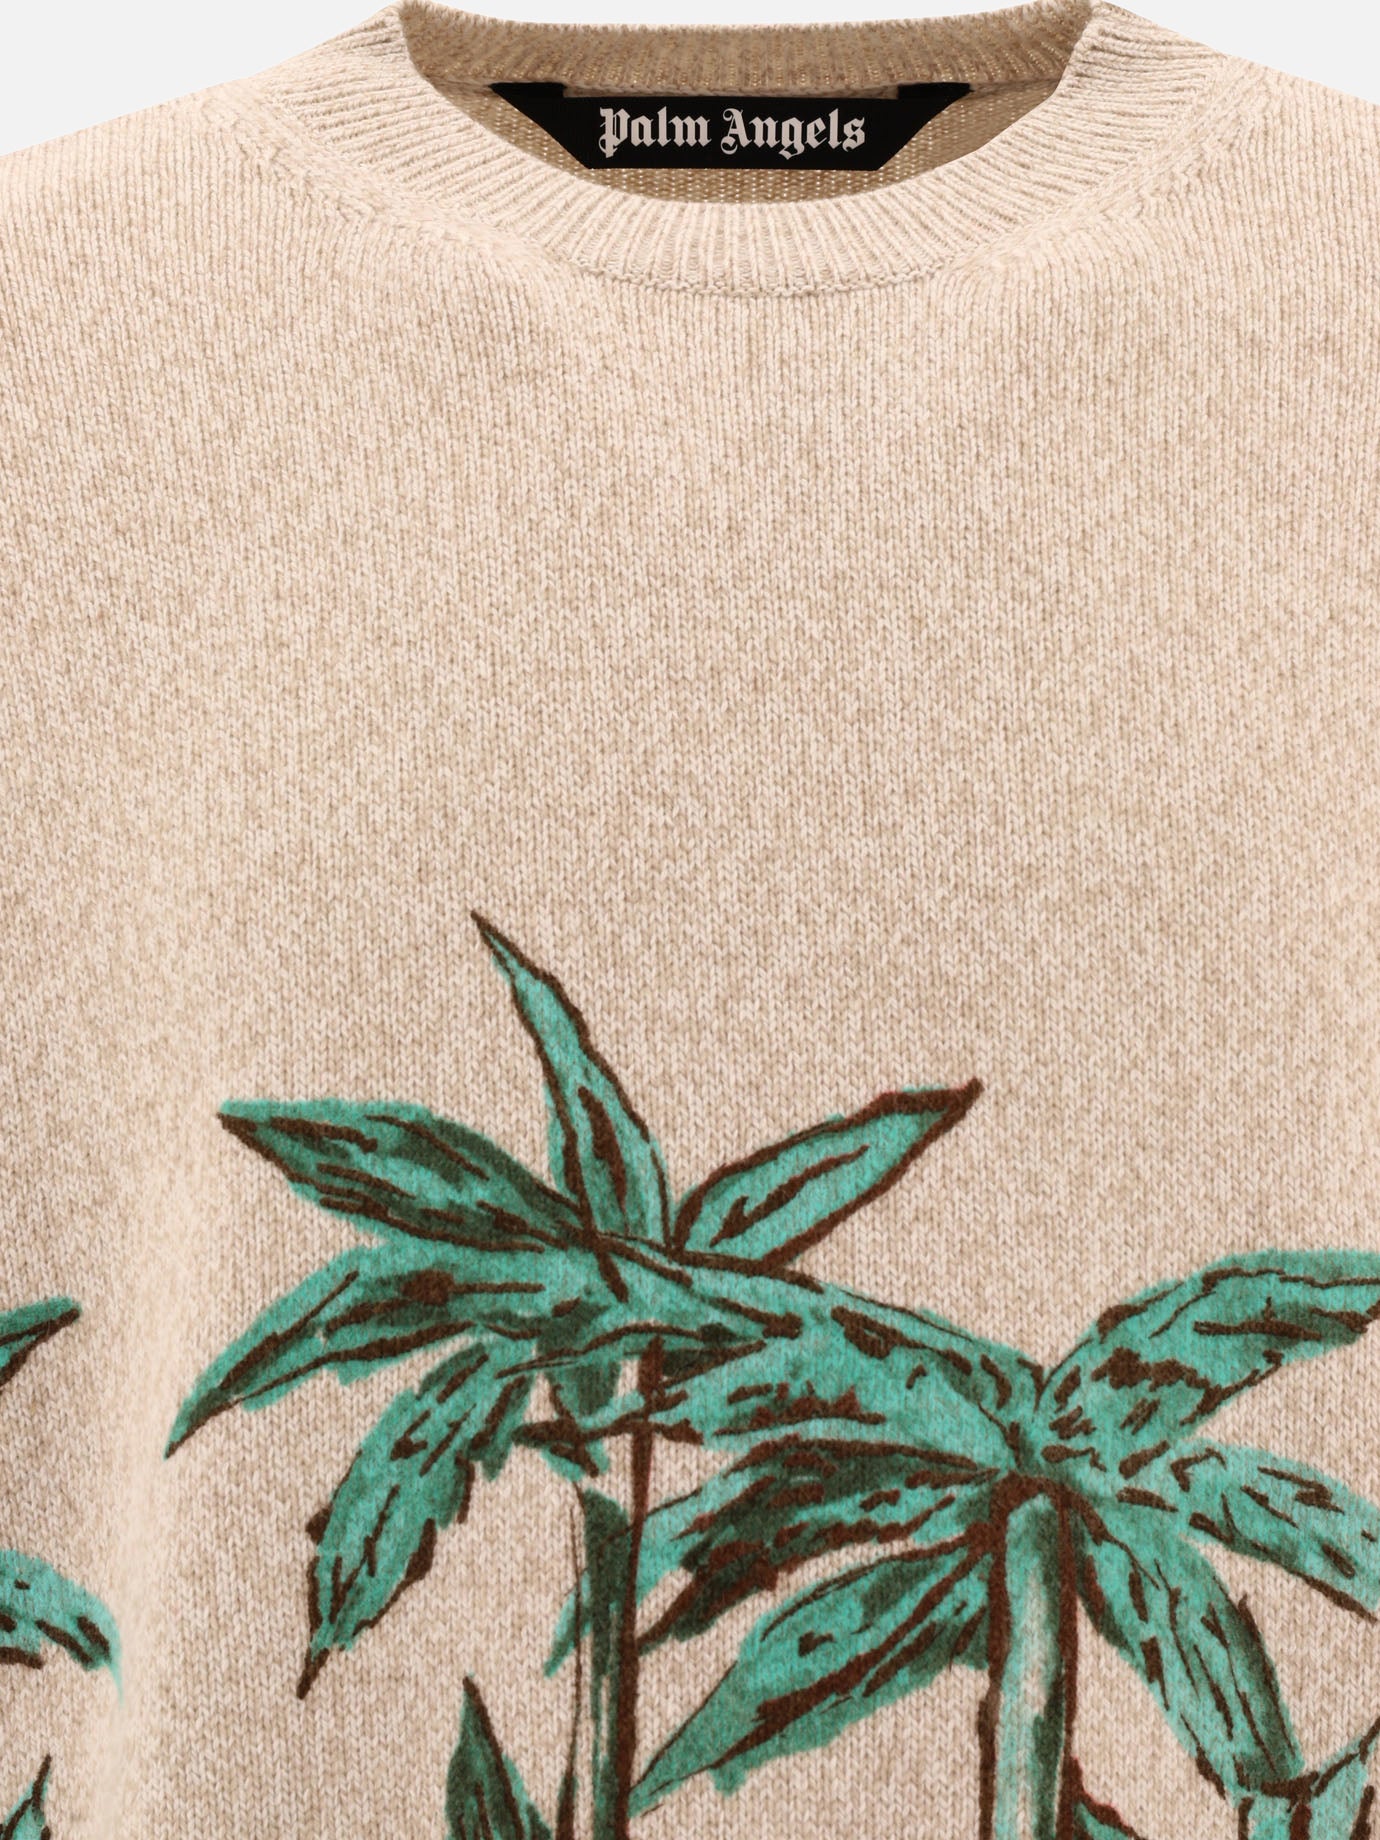 "Palms Row Printed" sweater